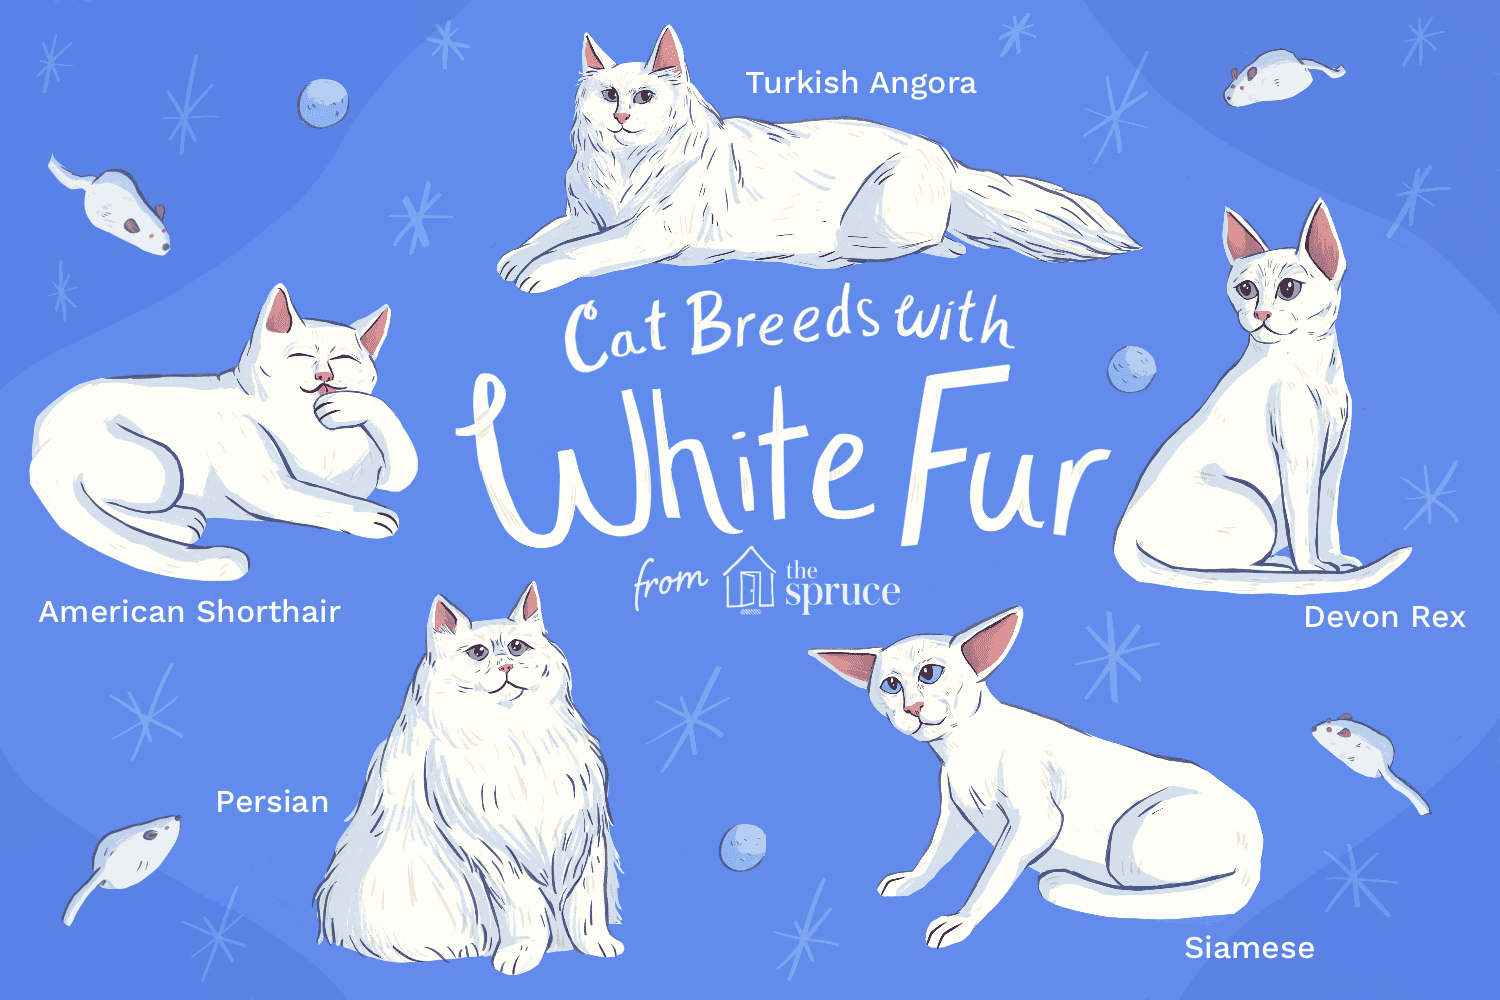 ペットとして飼うのに最適な白猫の品種 